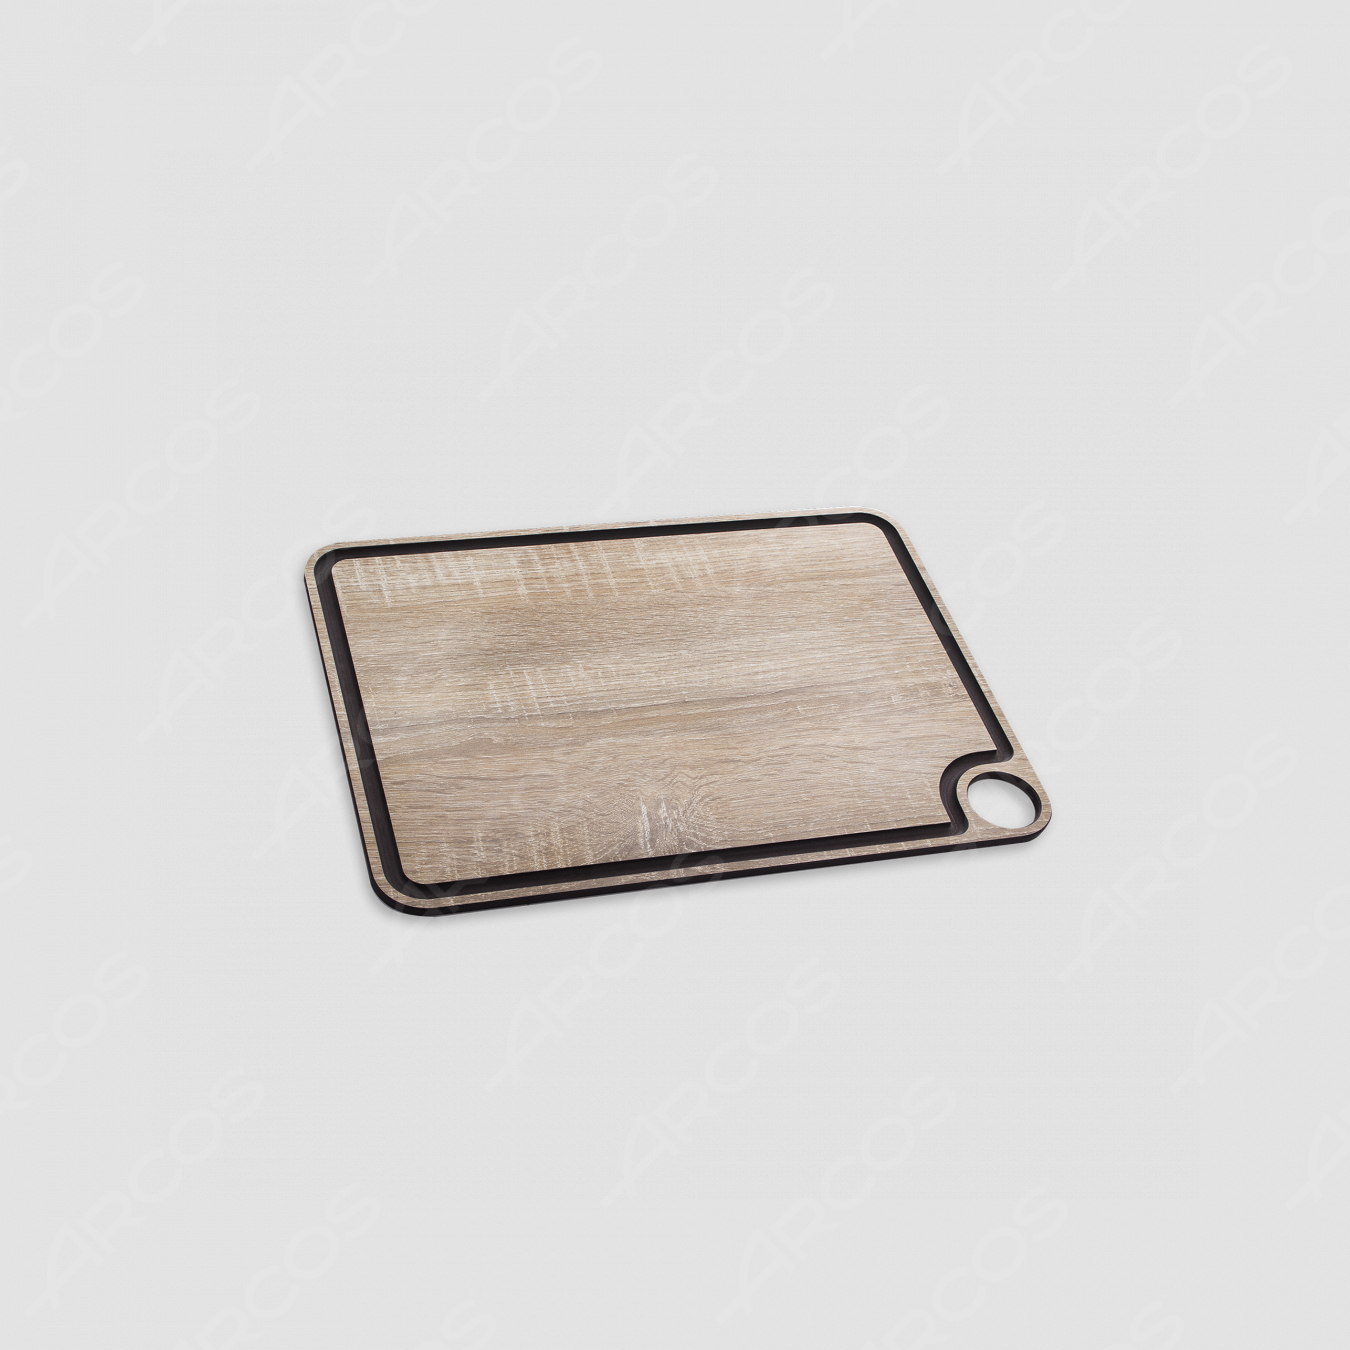 Доска разделочная с желобом 33х23 см, материал: дерево, серия Accessories, ARCOS, Испания